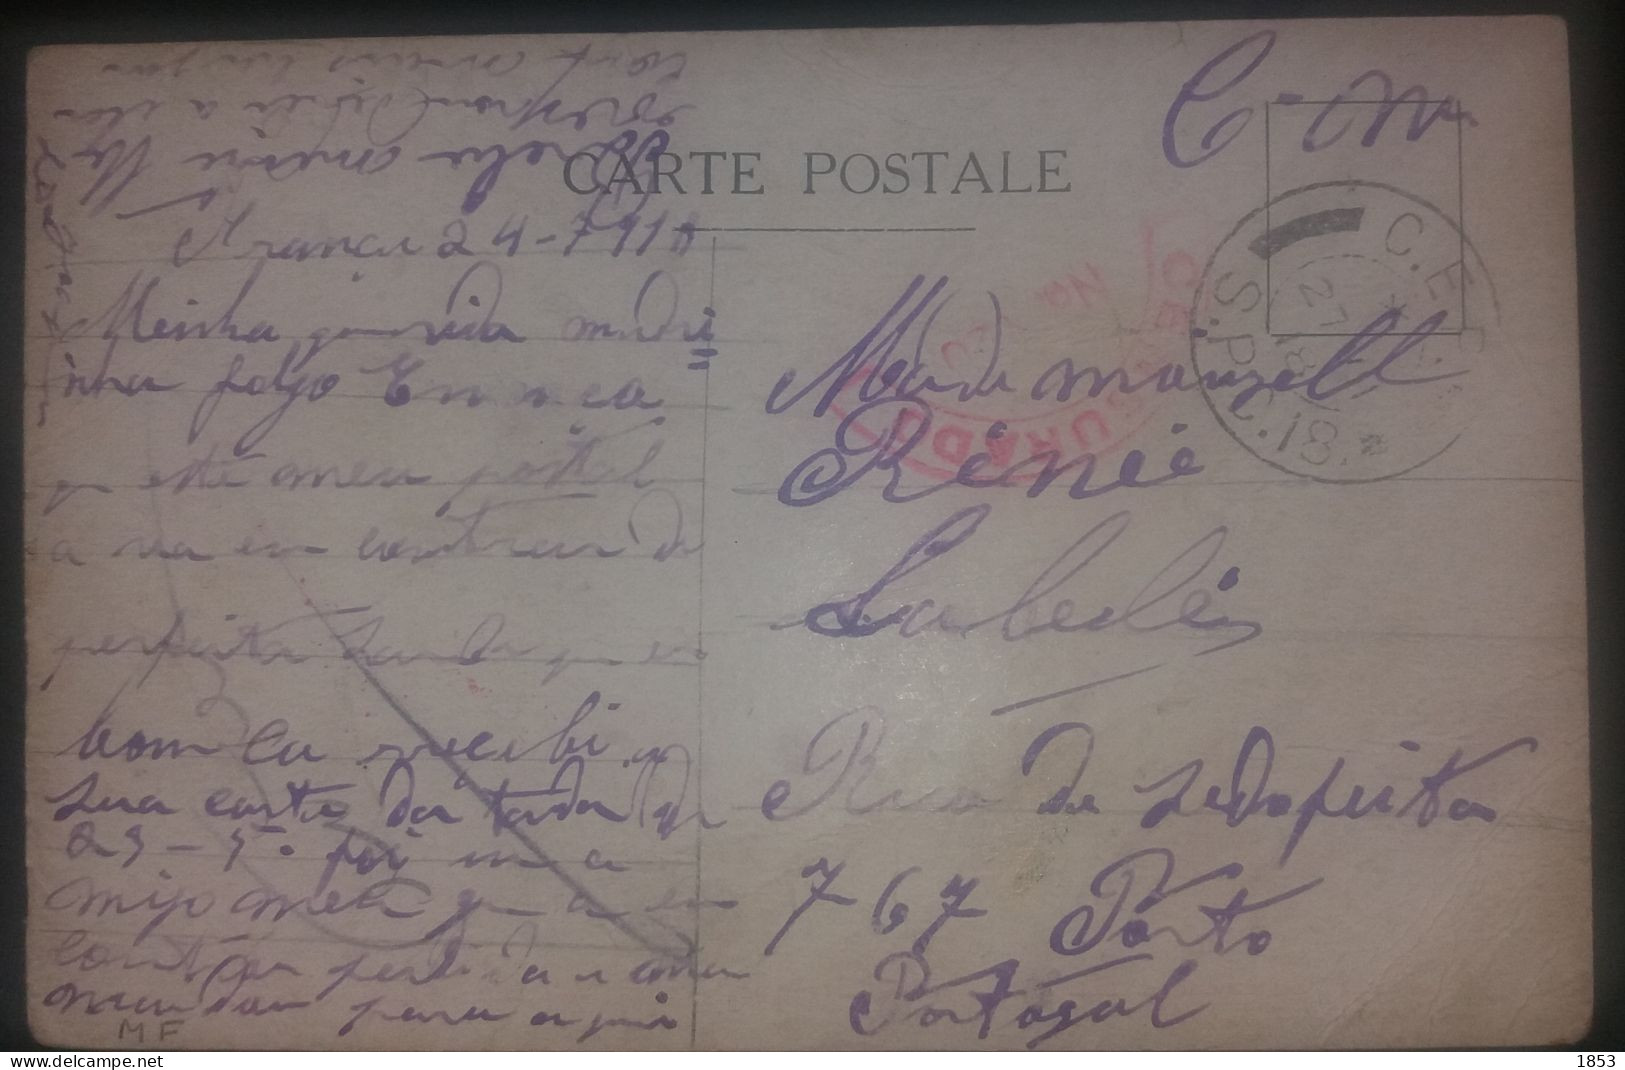 MARCOFILIA - CORREIO MILITAR - WWI - CENSURAS - Postmark Collection